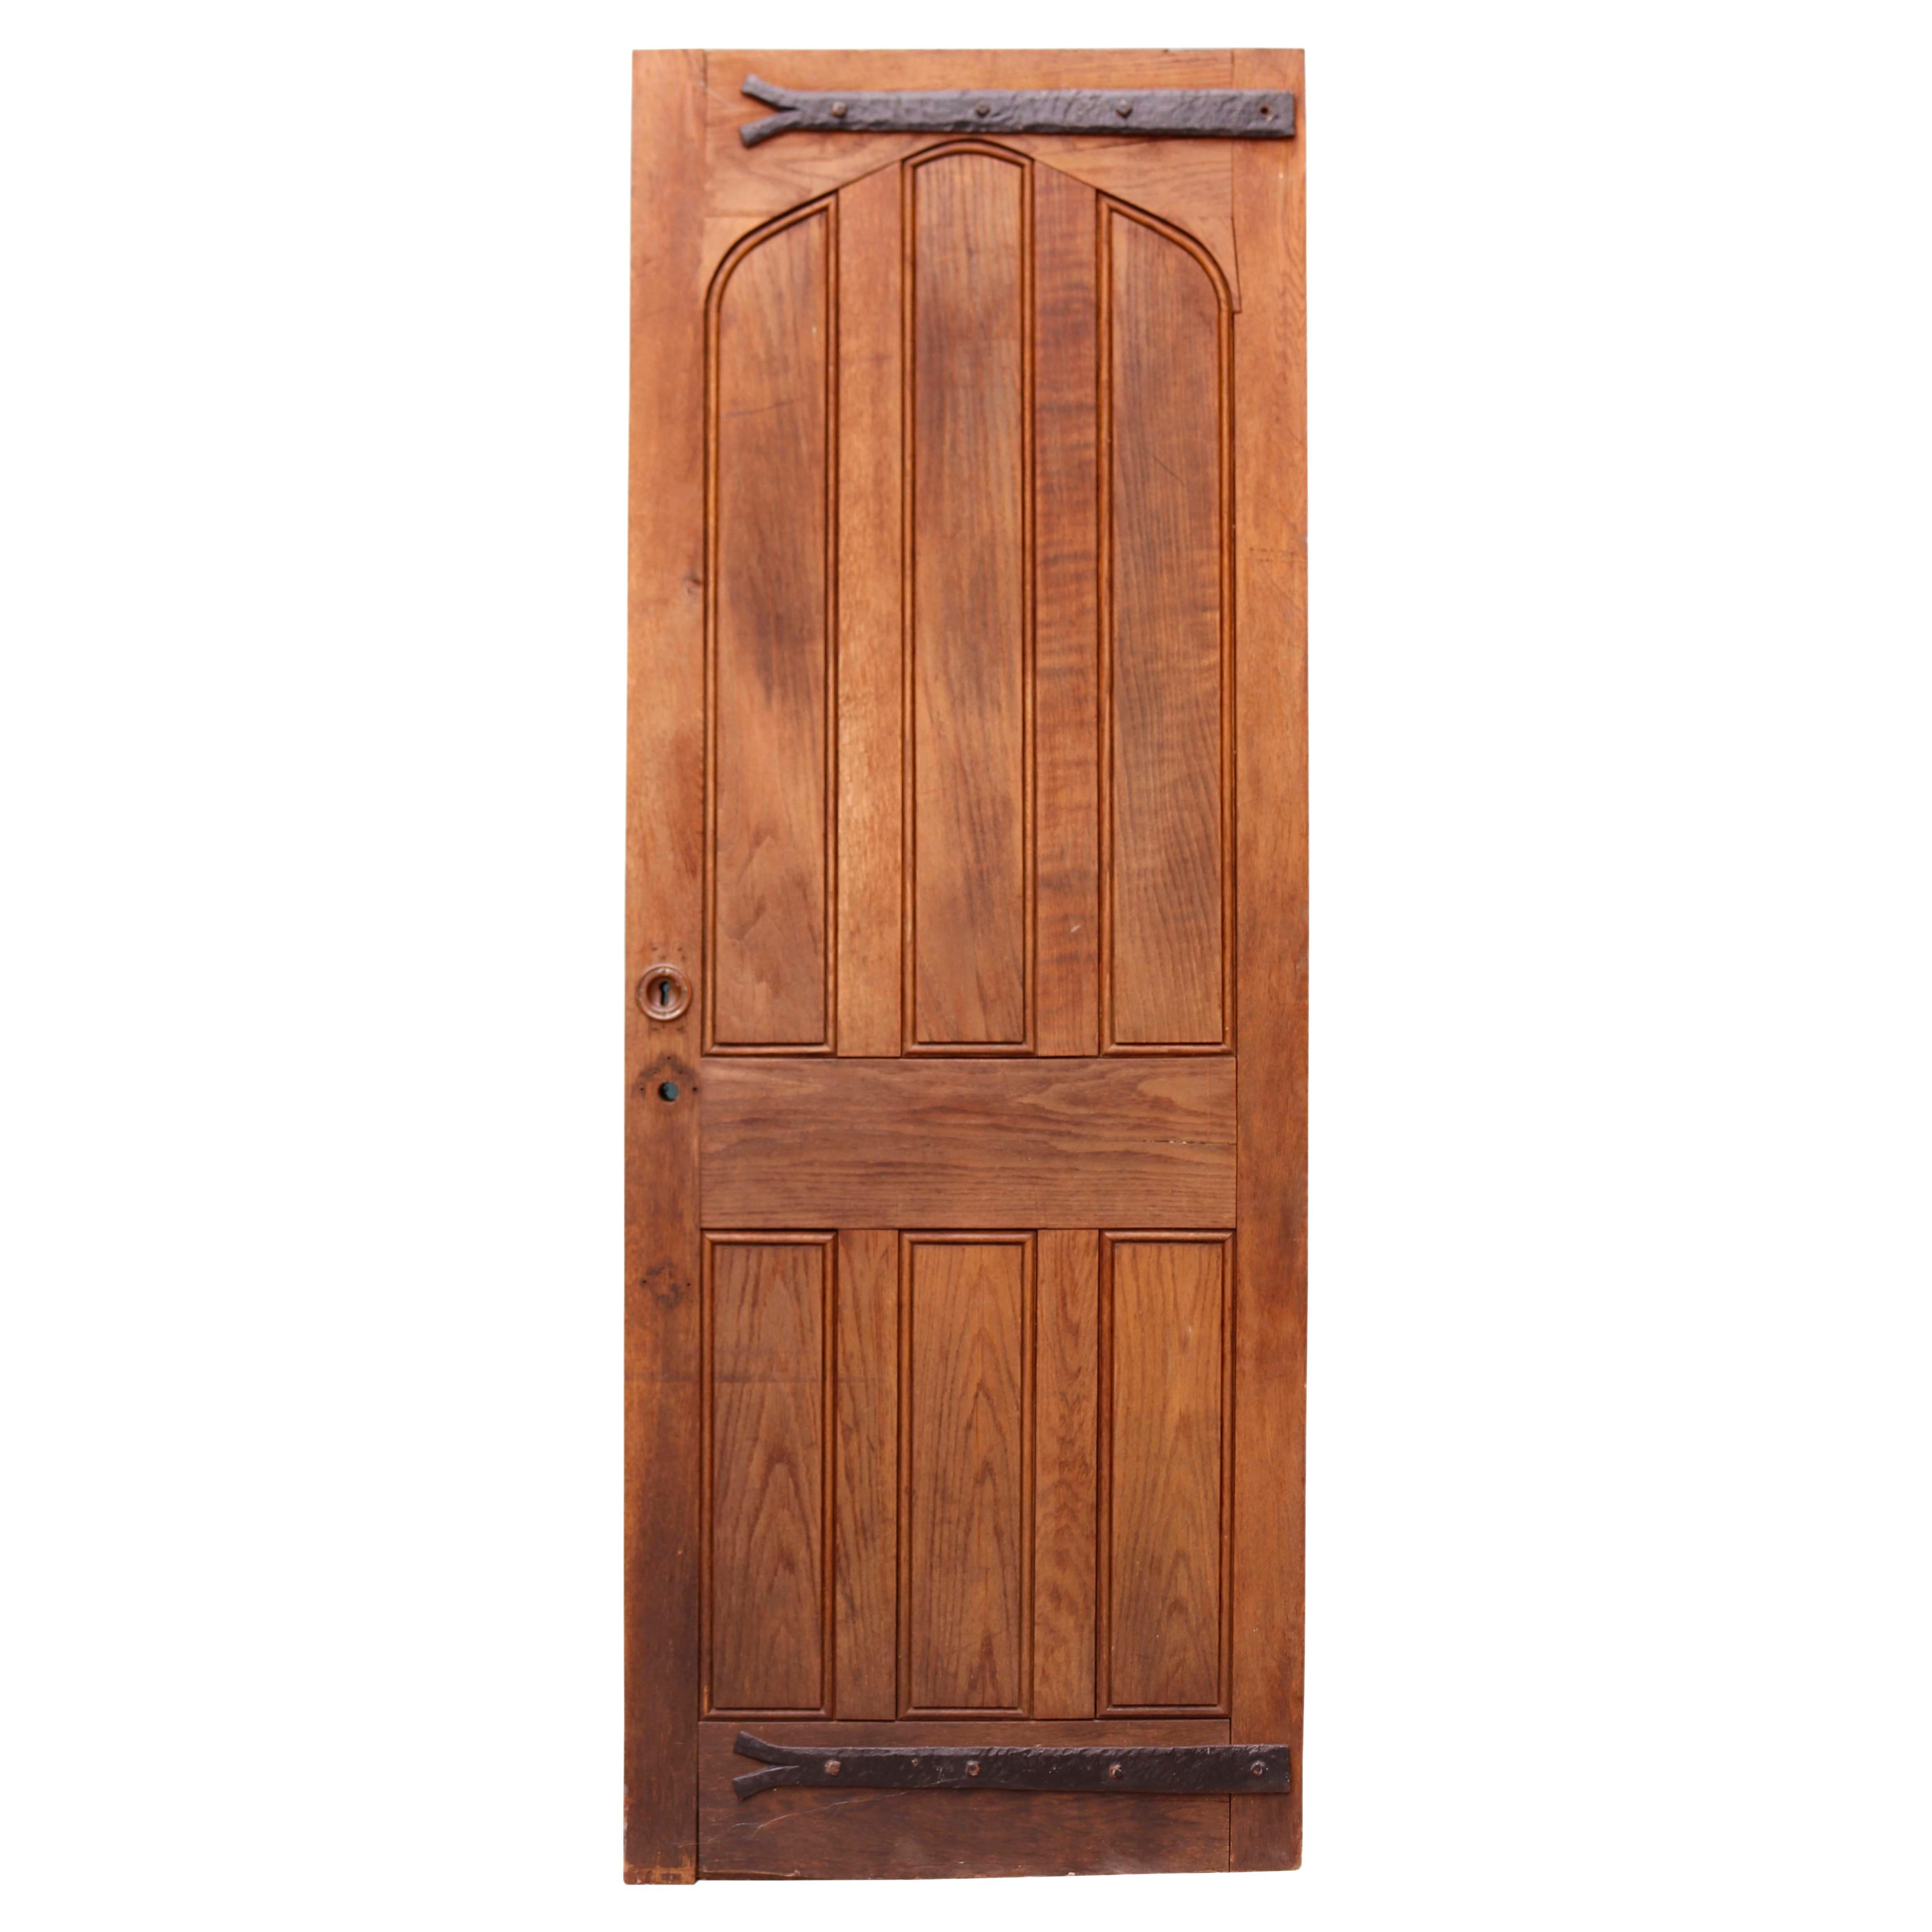 1930s Oak Exterior Door For Sale